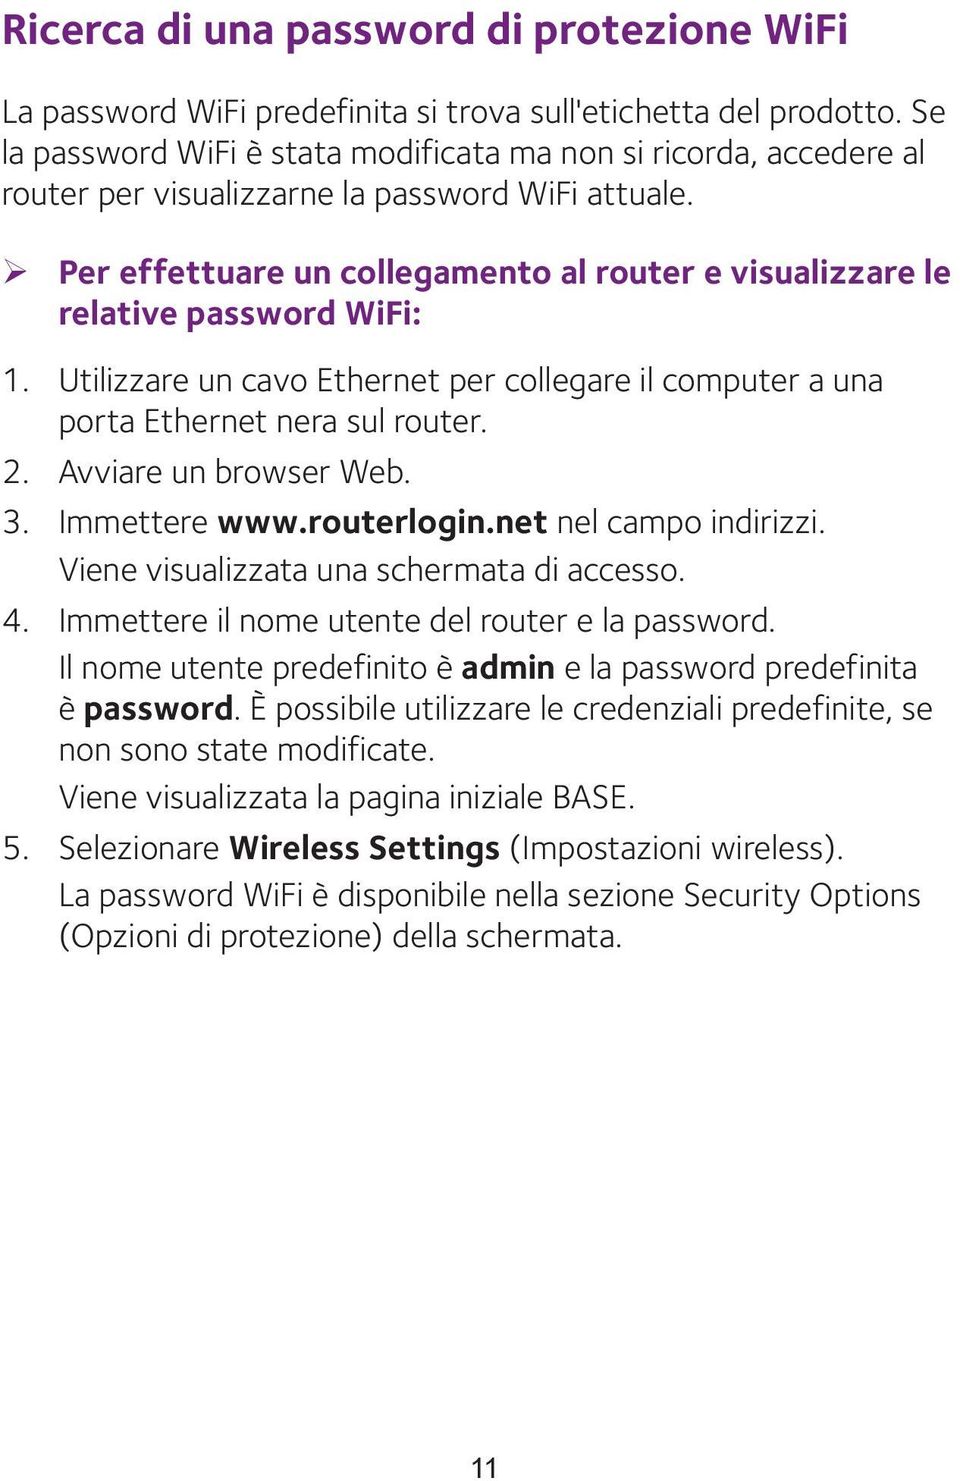 ¾ Per effettuare un collegamento al router e visualizzare le relative password WiFi: 1. Utilizzare un cavo Ethernet per collegare il computer a una porta Ethernet nera sul router. 2.